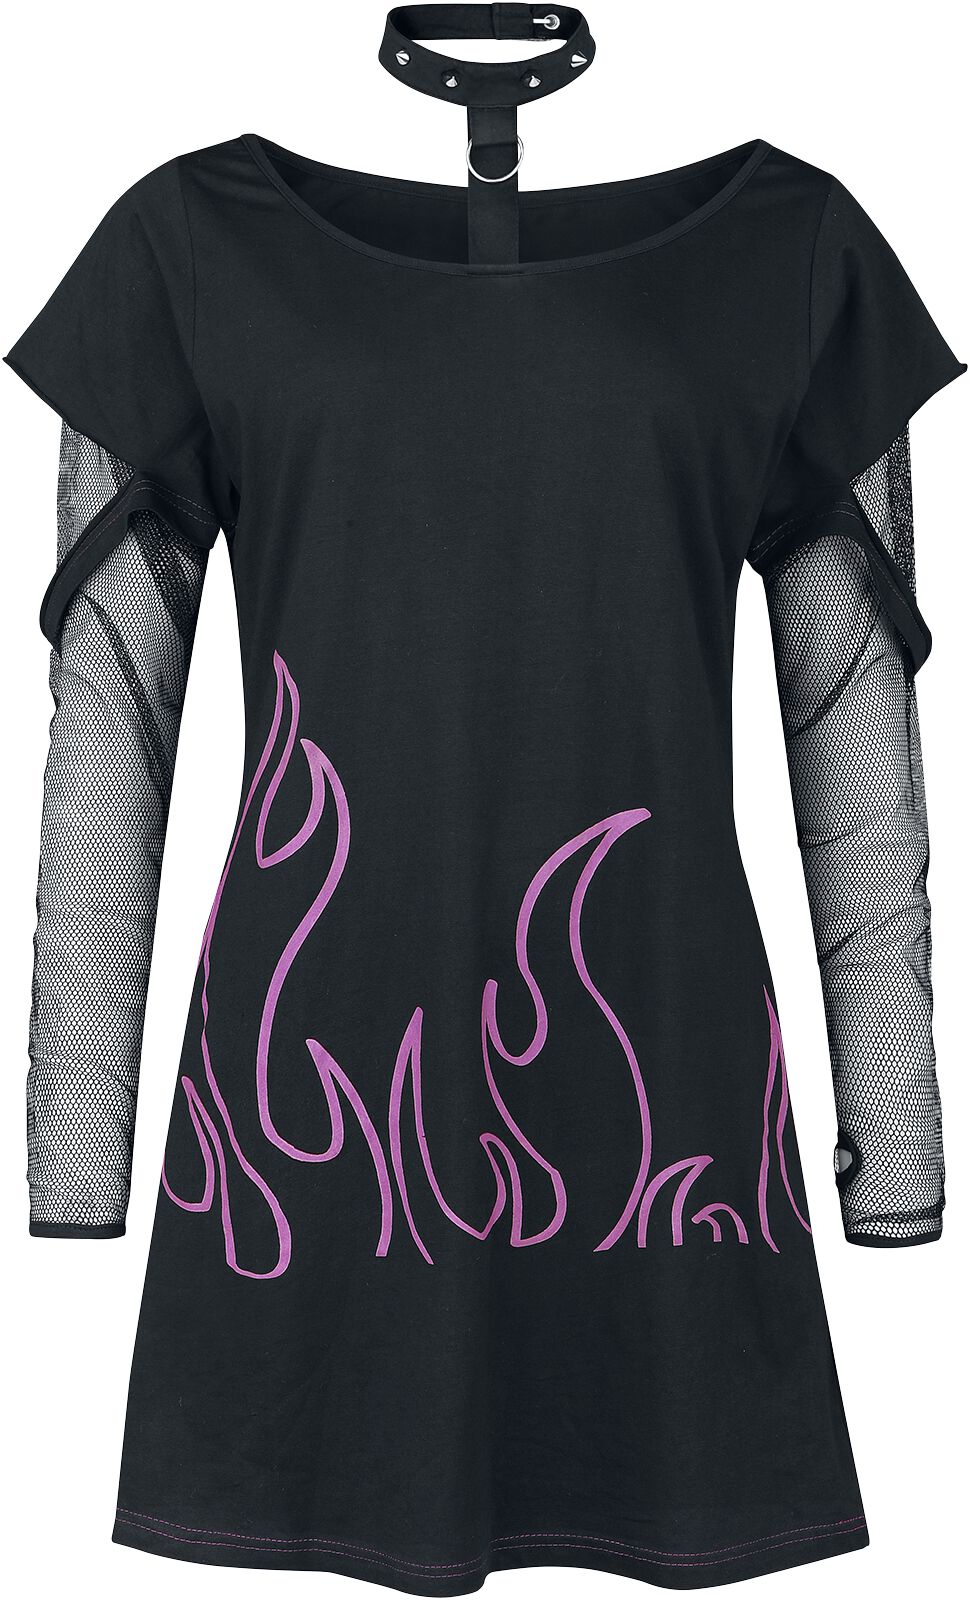 Heartless - Gothic Langarmshirt - Depths Of Hell Top - XS bis 4XL - für Damen - Größe S - schwarz/pink